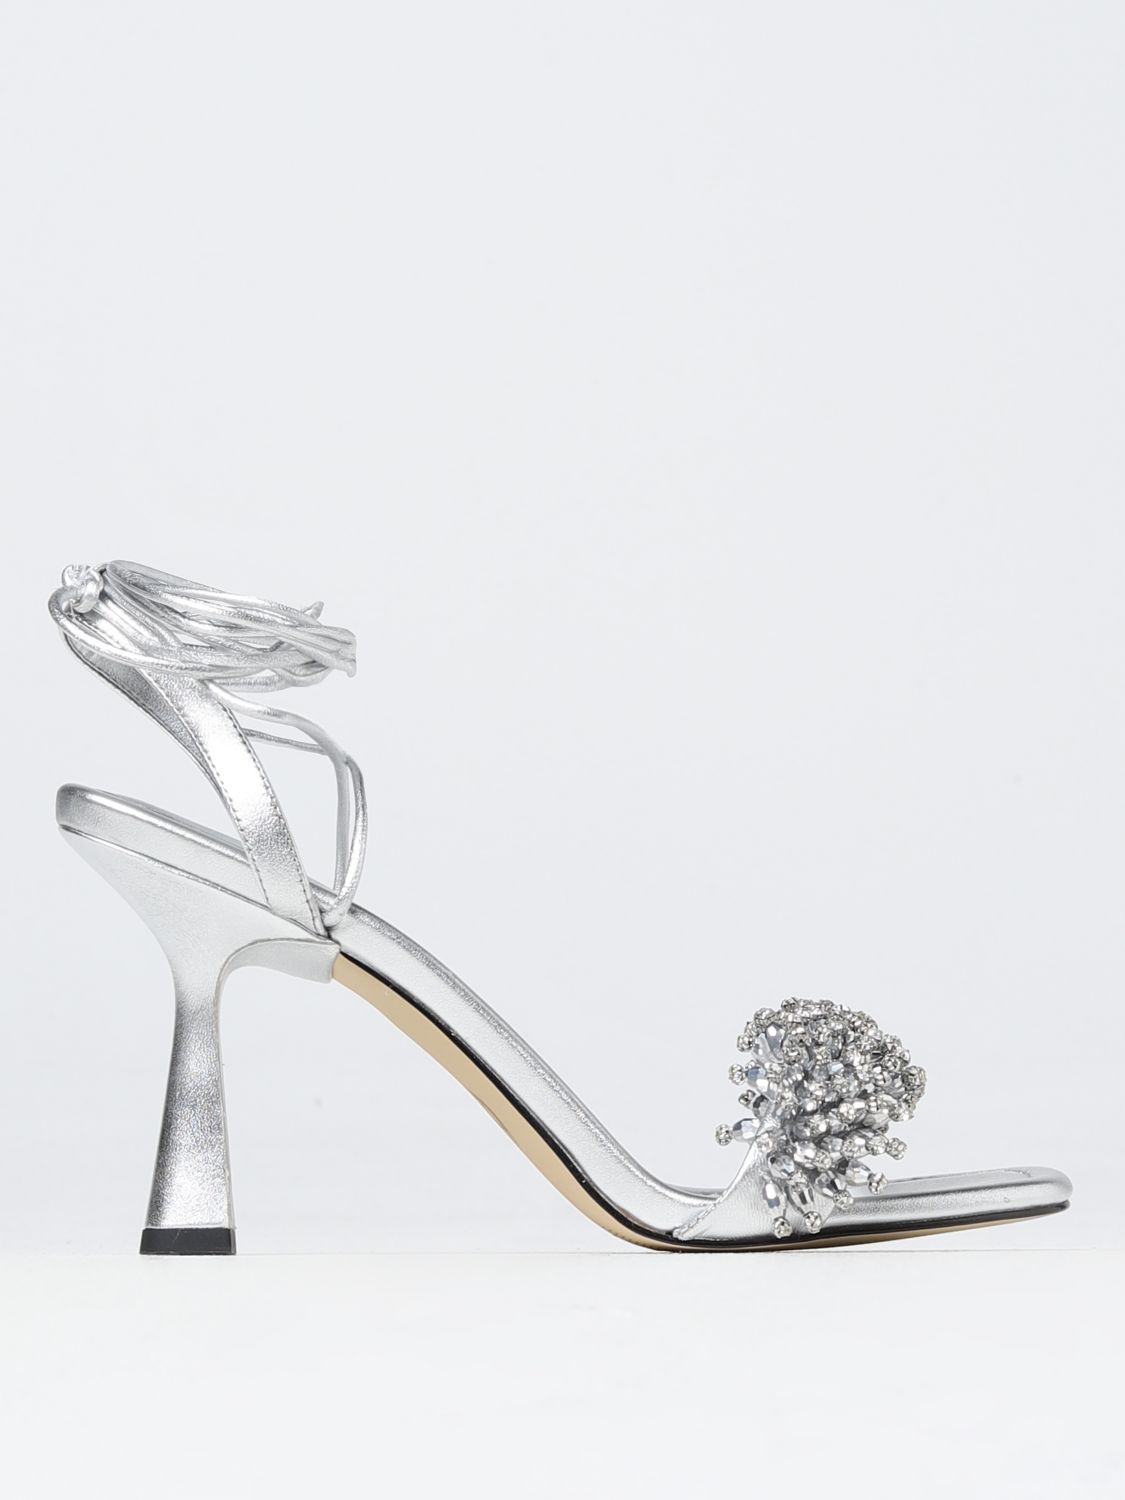 Michael Kors Shoes  Woman Color Silver